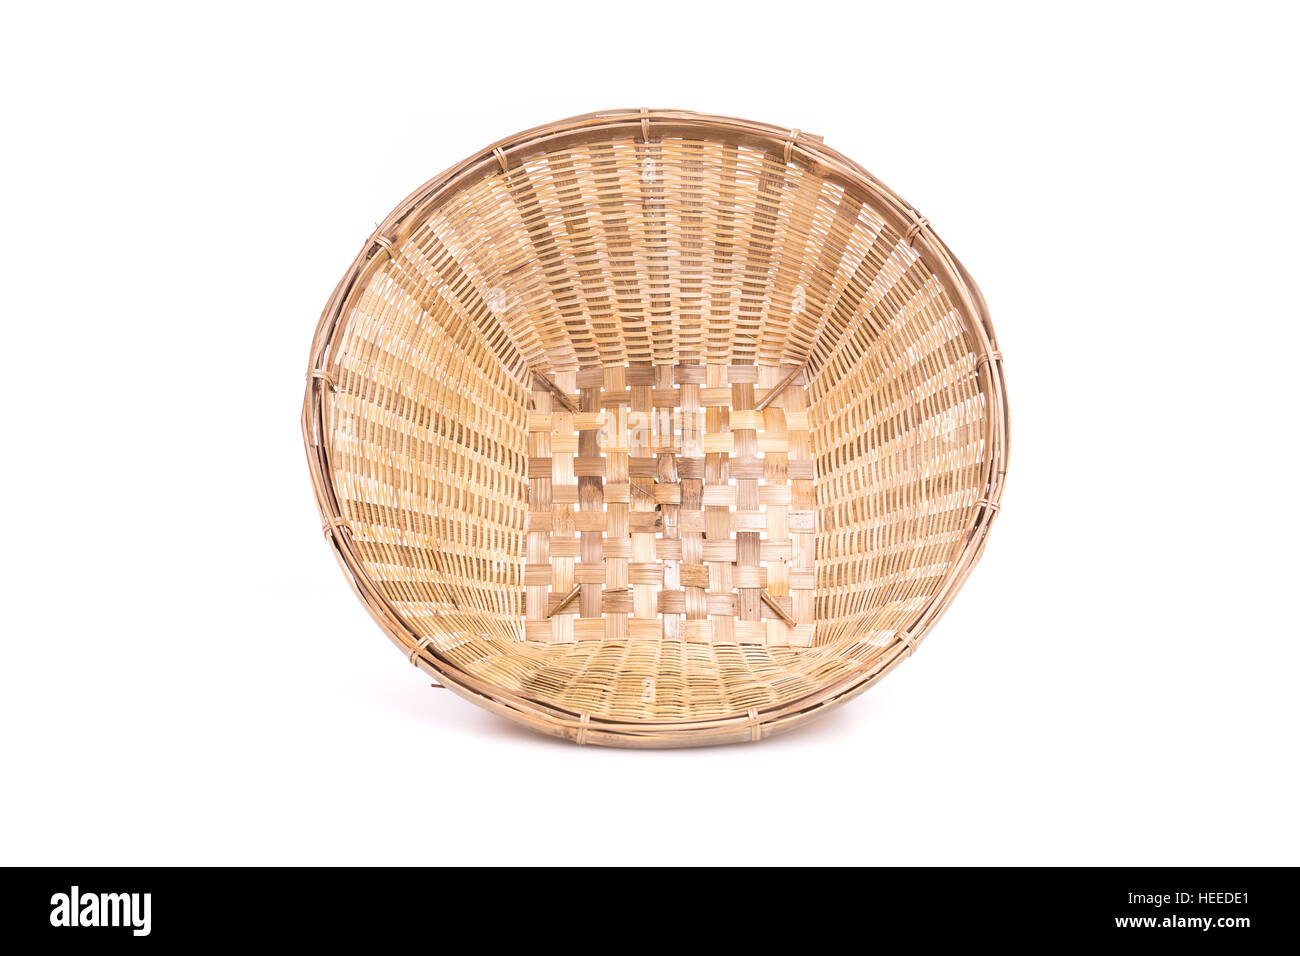 Empty bamboo basket handmade isolated on white background Stock Photo